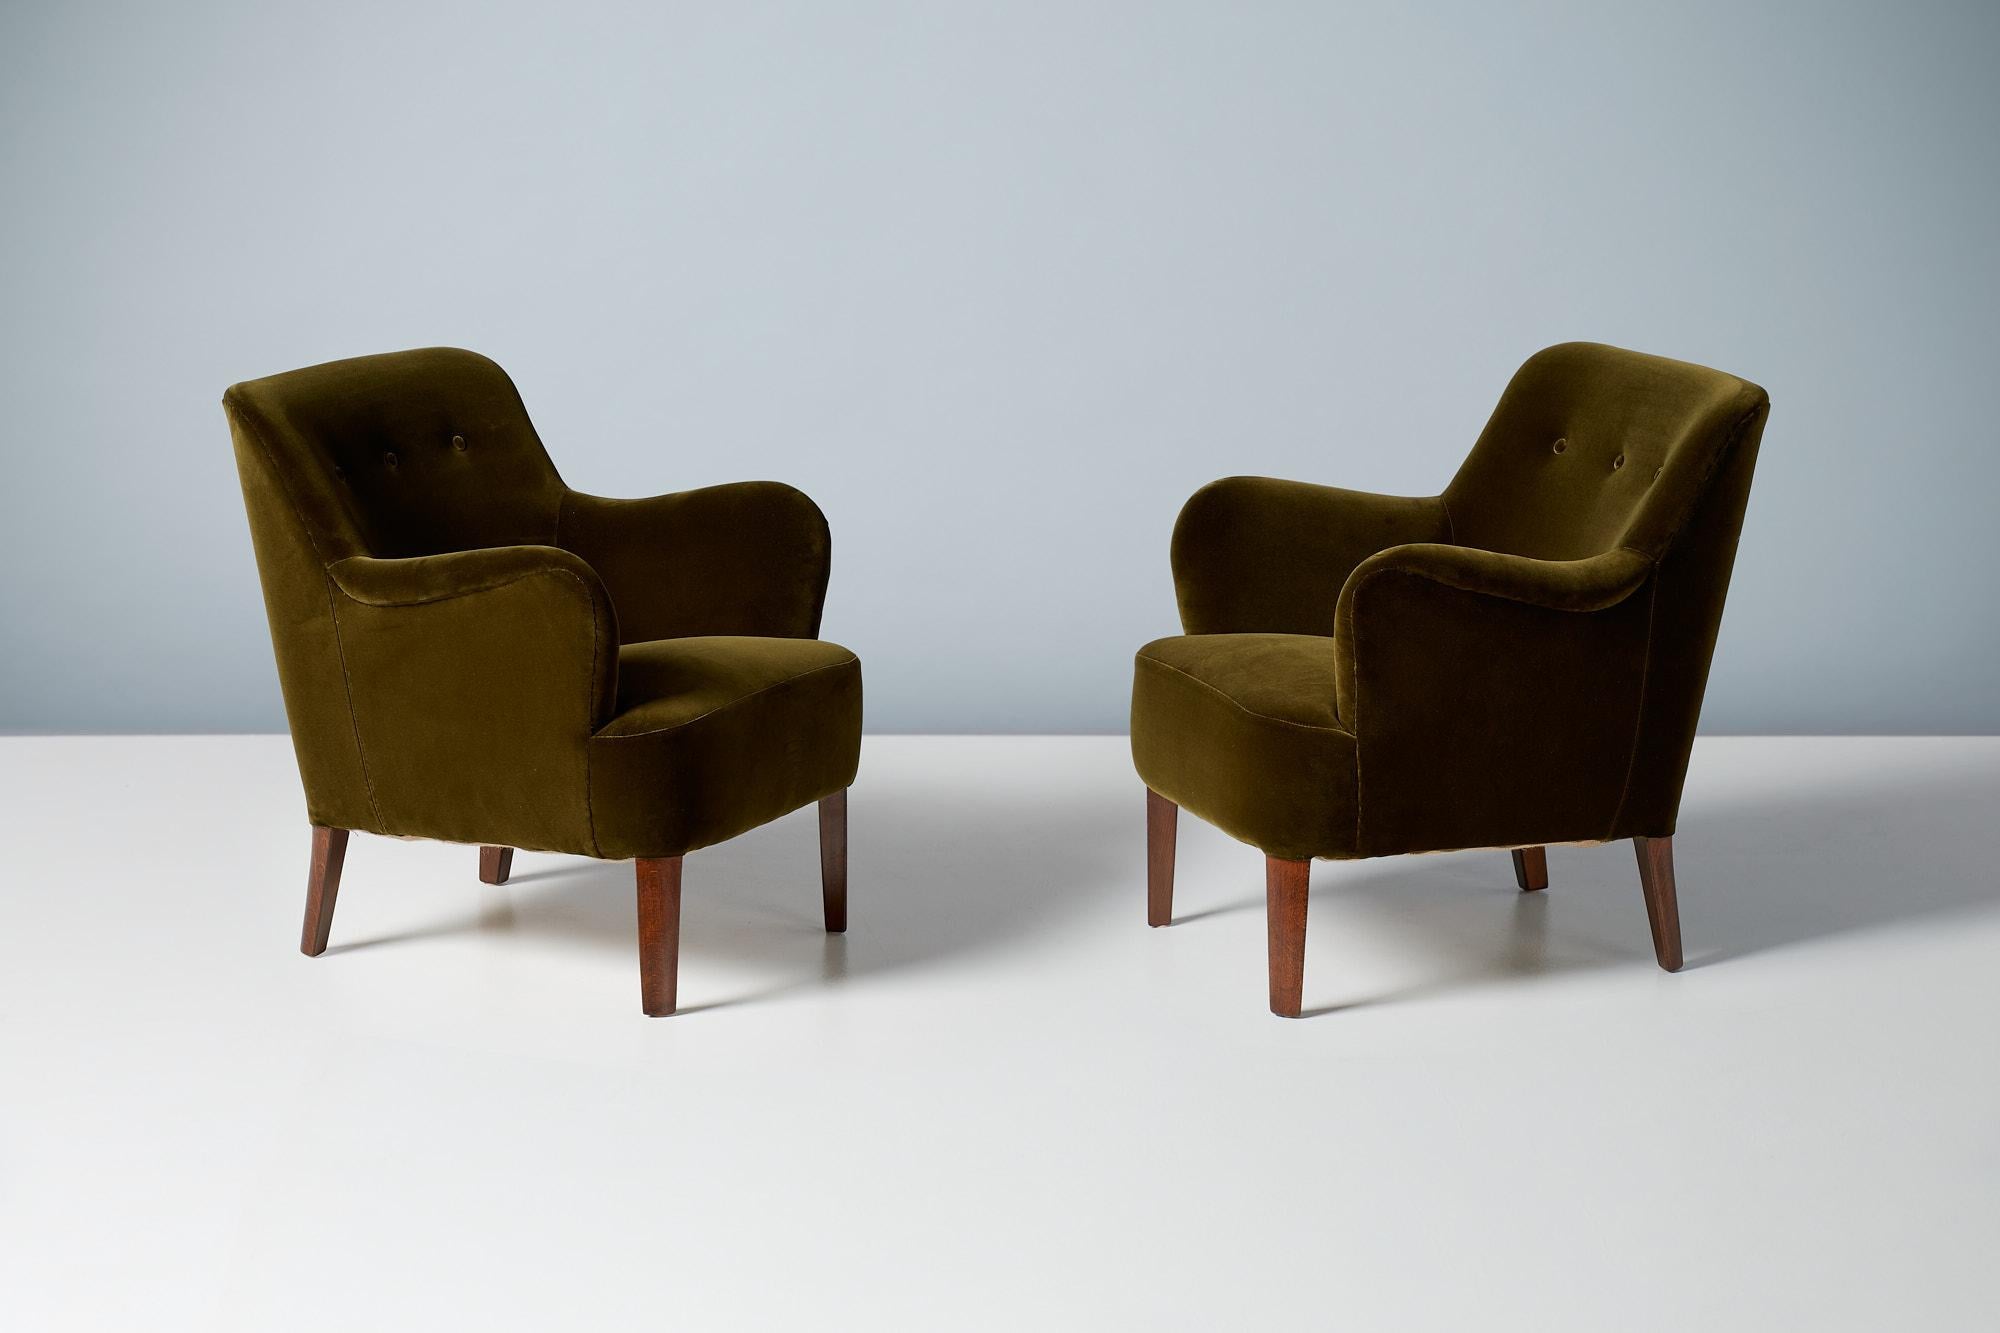 Peter Hvidt - Modell 1748 Lounge Chairs, um 1940.
Diese eleganten Sessel mit niedriger Rückenlehne wurden in den späten 1940er Jahren von Fritz Hansen in Dänemark unter der Leitung des Meisterdesigners Peter Hvidt hergestellt. Die Buchenbeine wurden